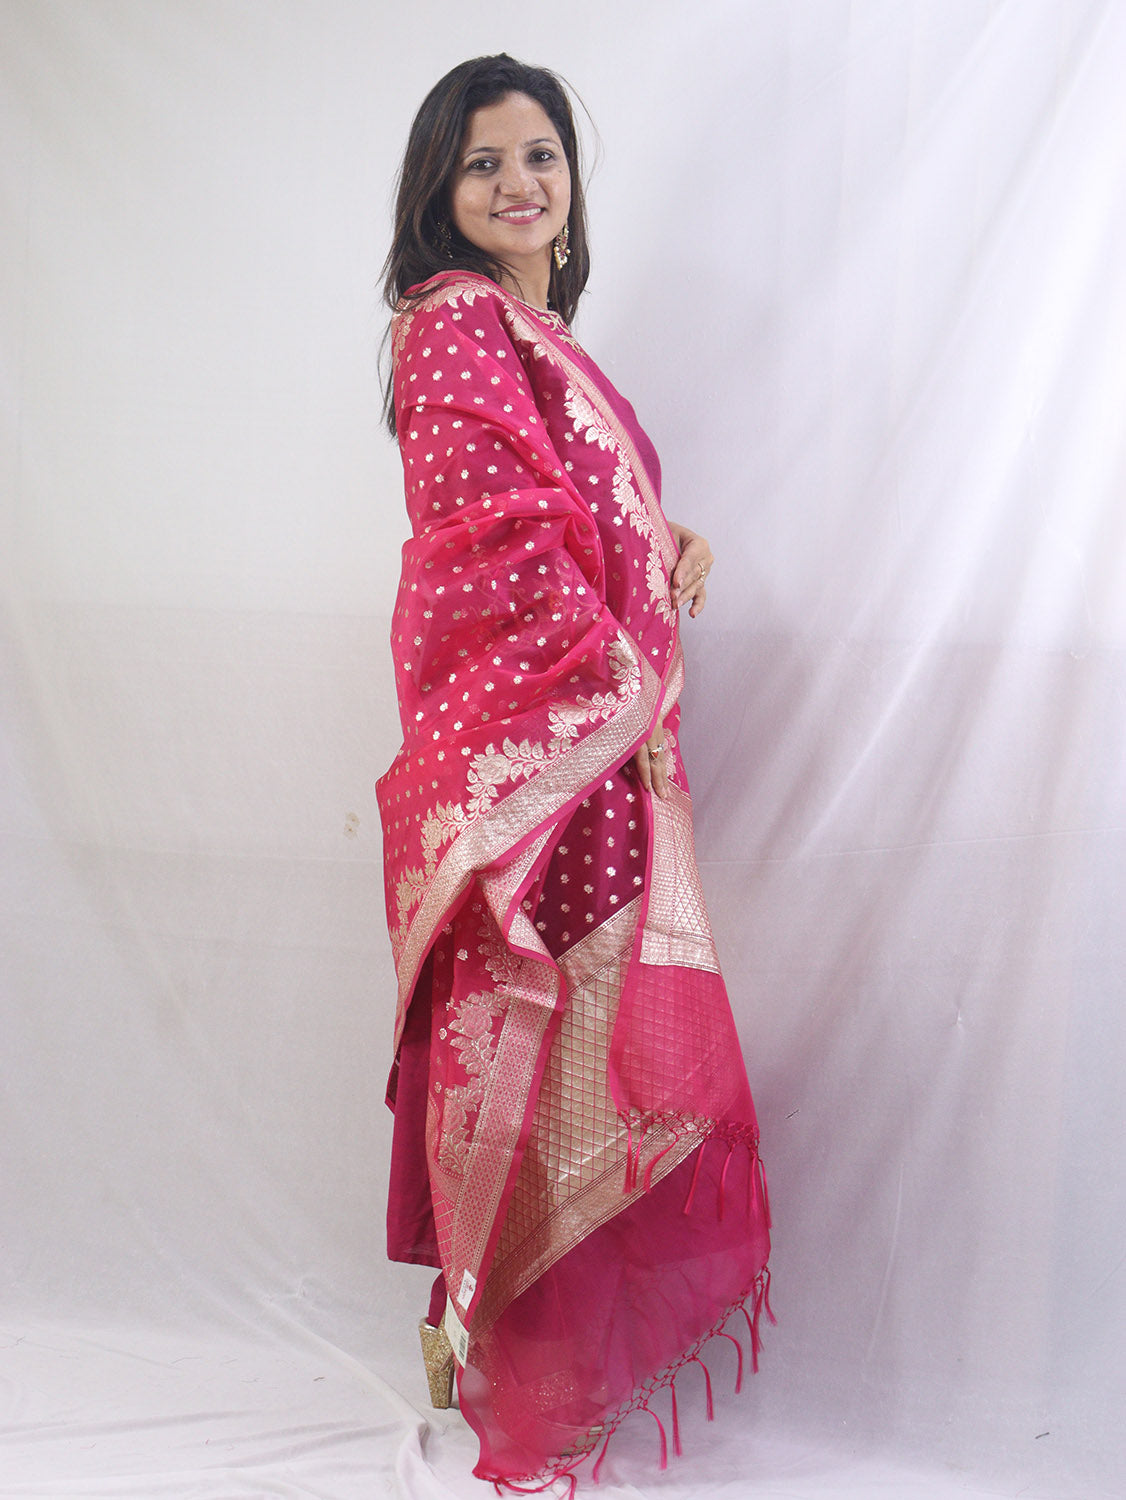 Stunning Pink Banarasi Organza Dupatta - Perfect for Ethnic Attire